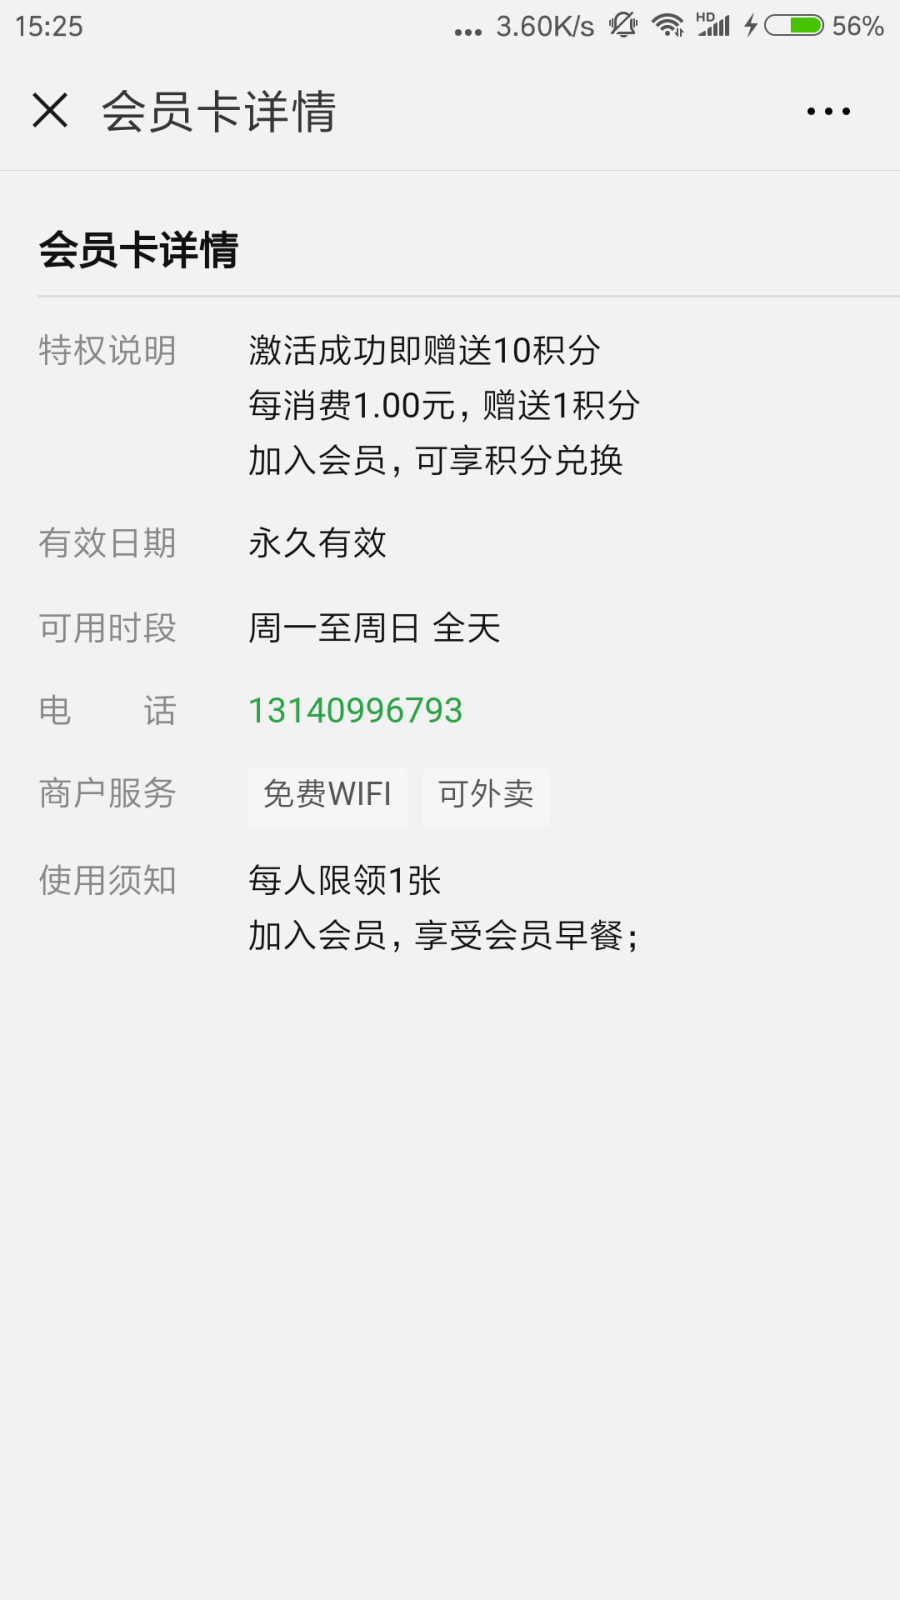 Screenshot_2018-08-25-15-25-29-238_com.tencent.mm.png